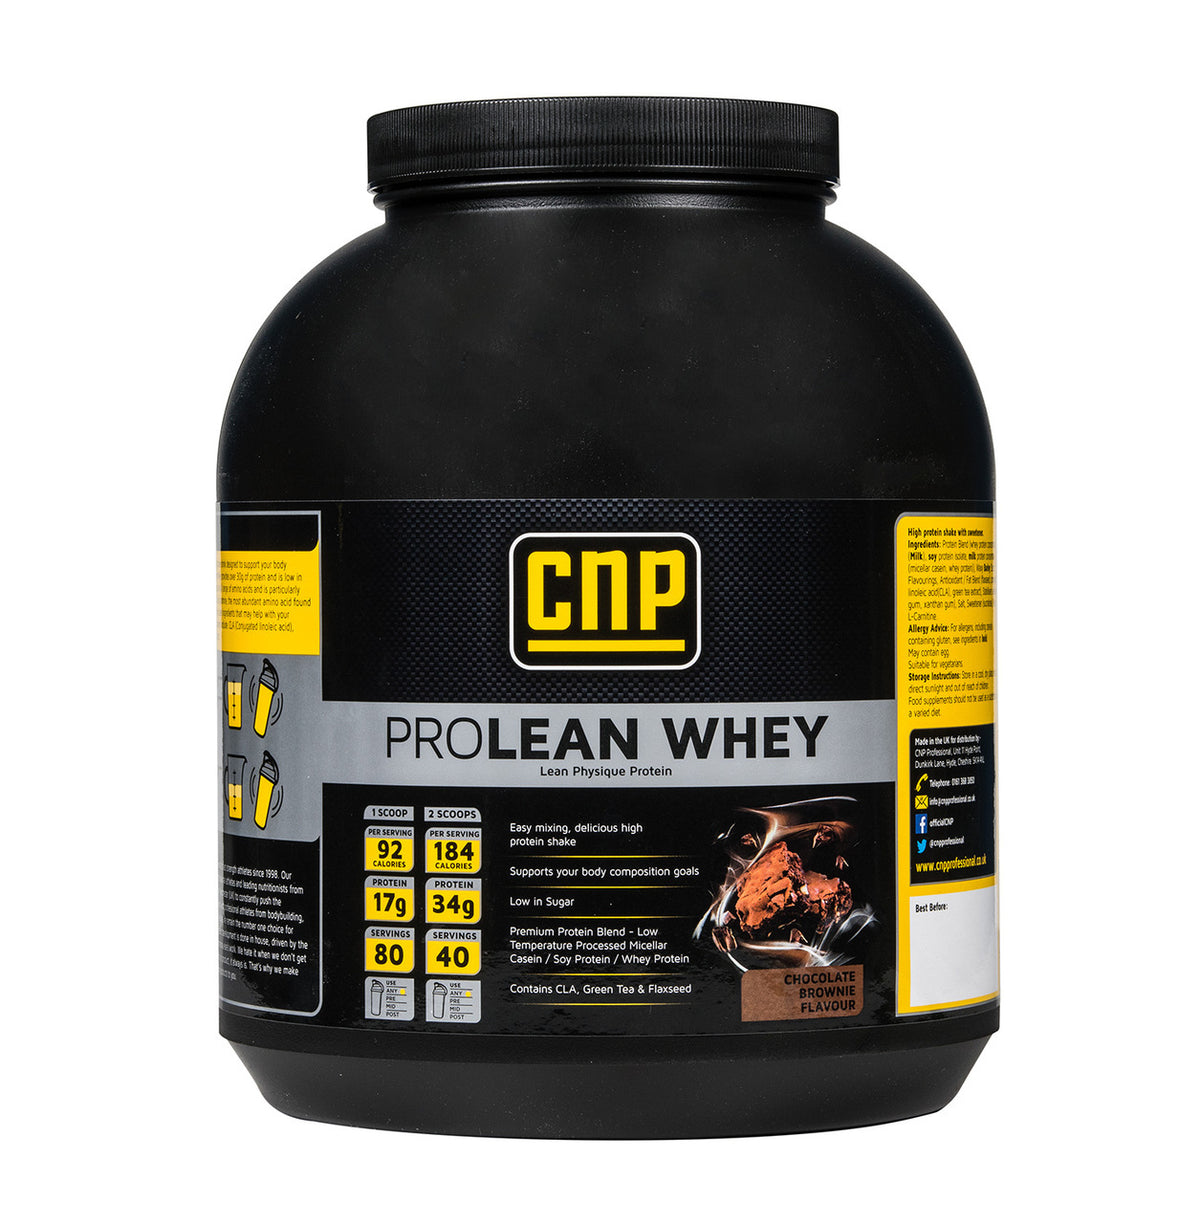 CNP Pro Lean Whey